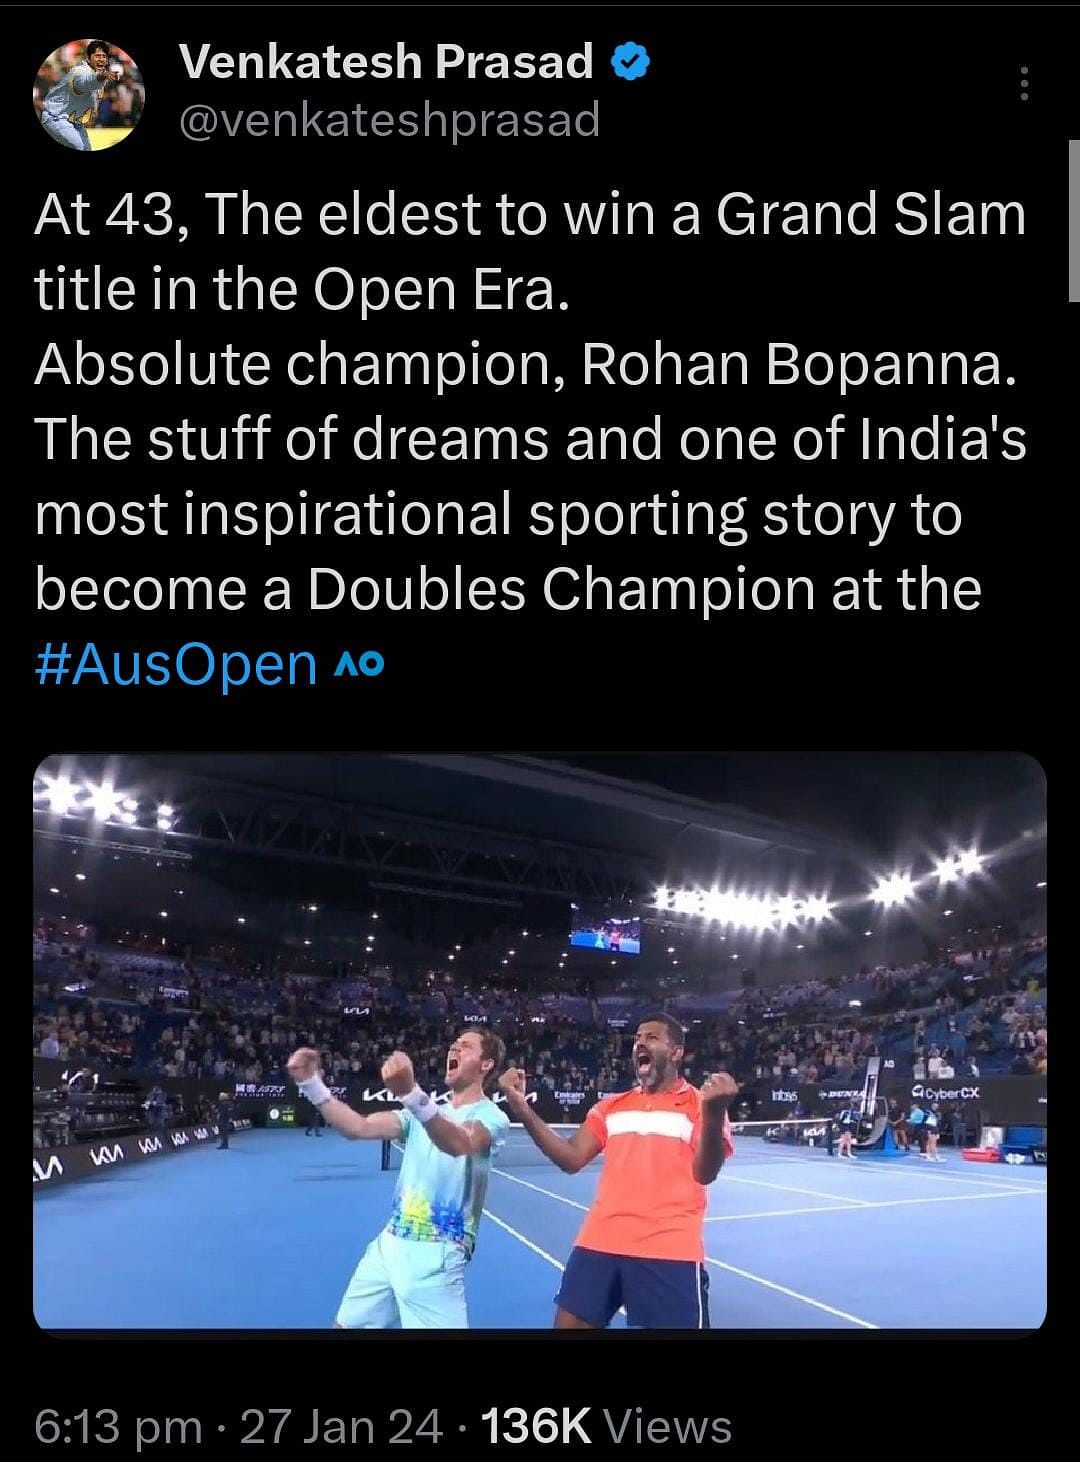 Rohan Bopanna ने मैथ्यू एबडेन के साथ ऑस्ट्रेलियन ओपन में मेंस डबल खिताब जीतकर एक नया विश्व रिकॉर्ड बनाया है.